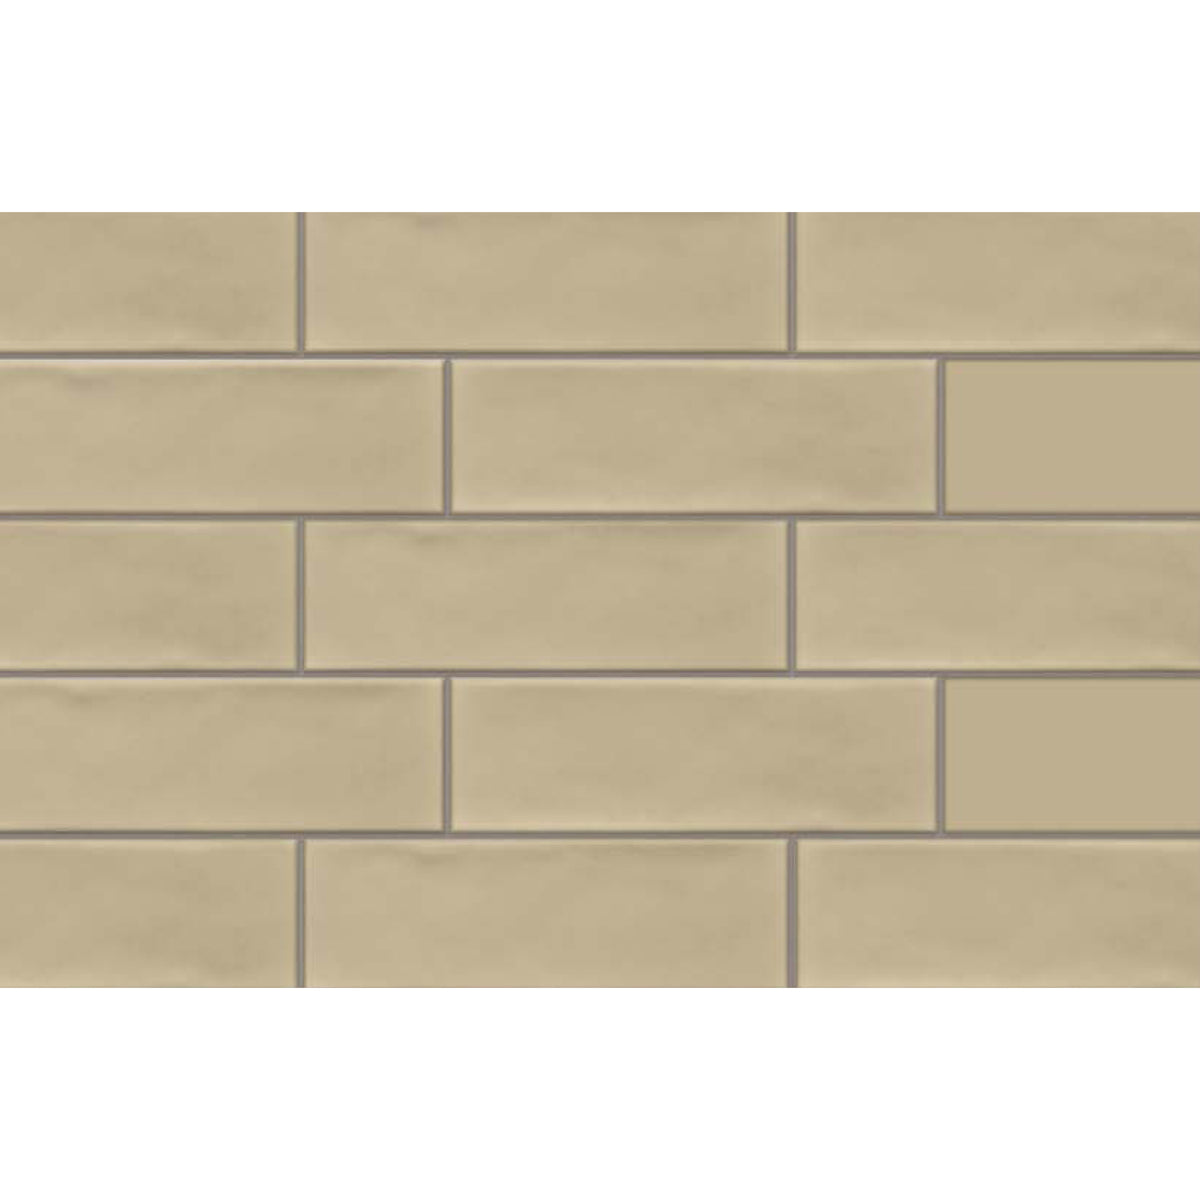 Topcu - Saibashi - 2.5 in. x 8 in. Ceramic Wall Tile - Pera